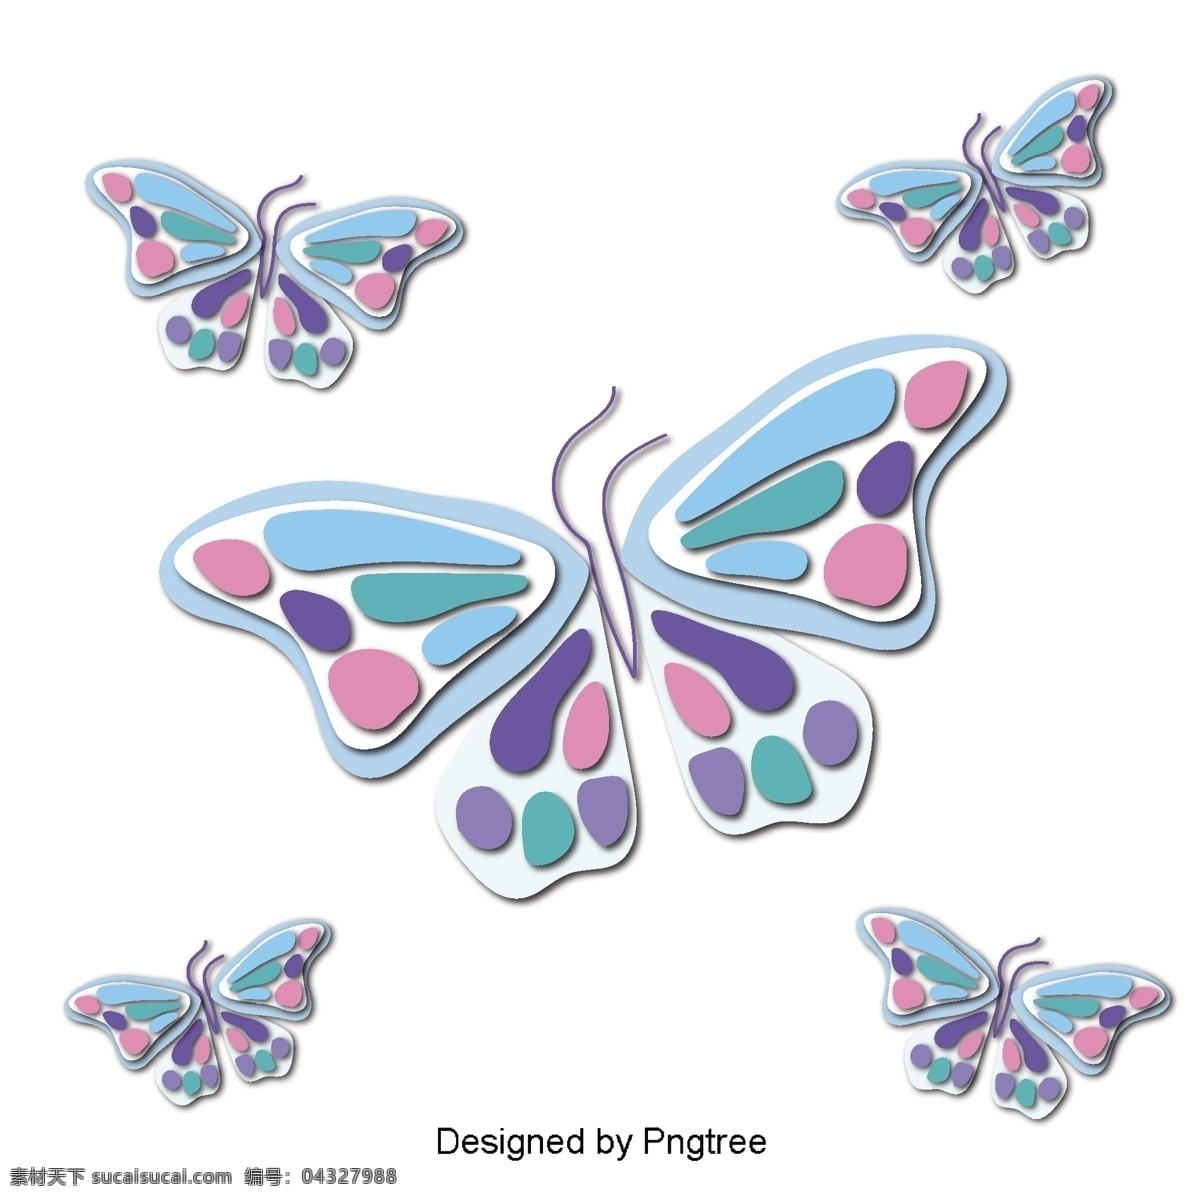 美丽 的卡 通 可爱 手绘 彩色 蝴蝶 翅膀 漂亮 卡通 平面 颜色 幻想 装饰